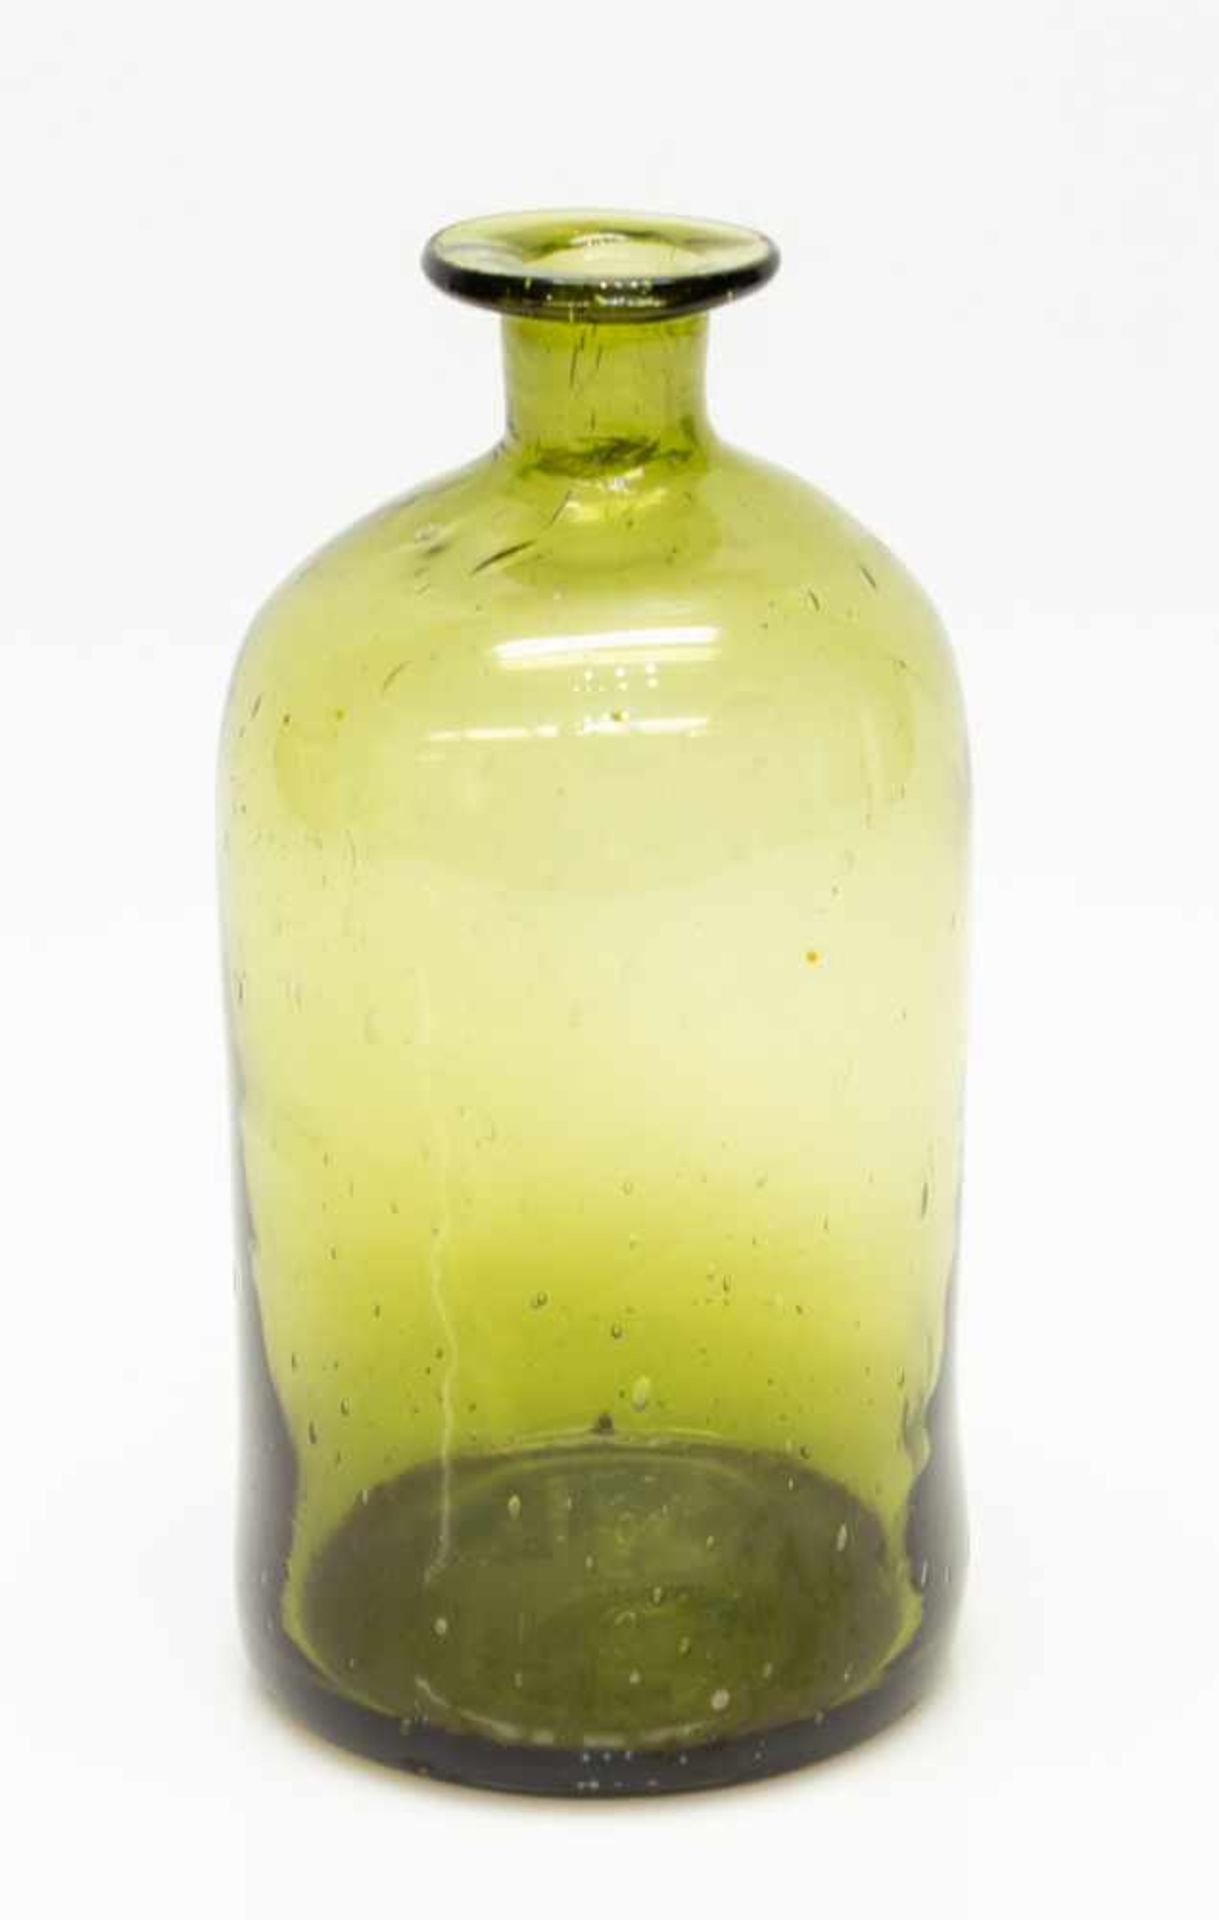 ApothekerflascheMecklenburger Waldglas Ende 19. Jh., grün gefärbtes Glas, eingezogene Schulter,